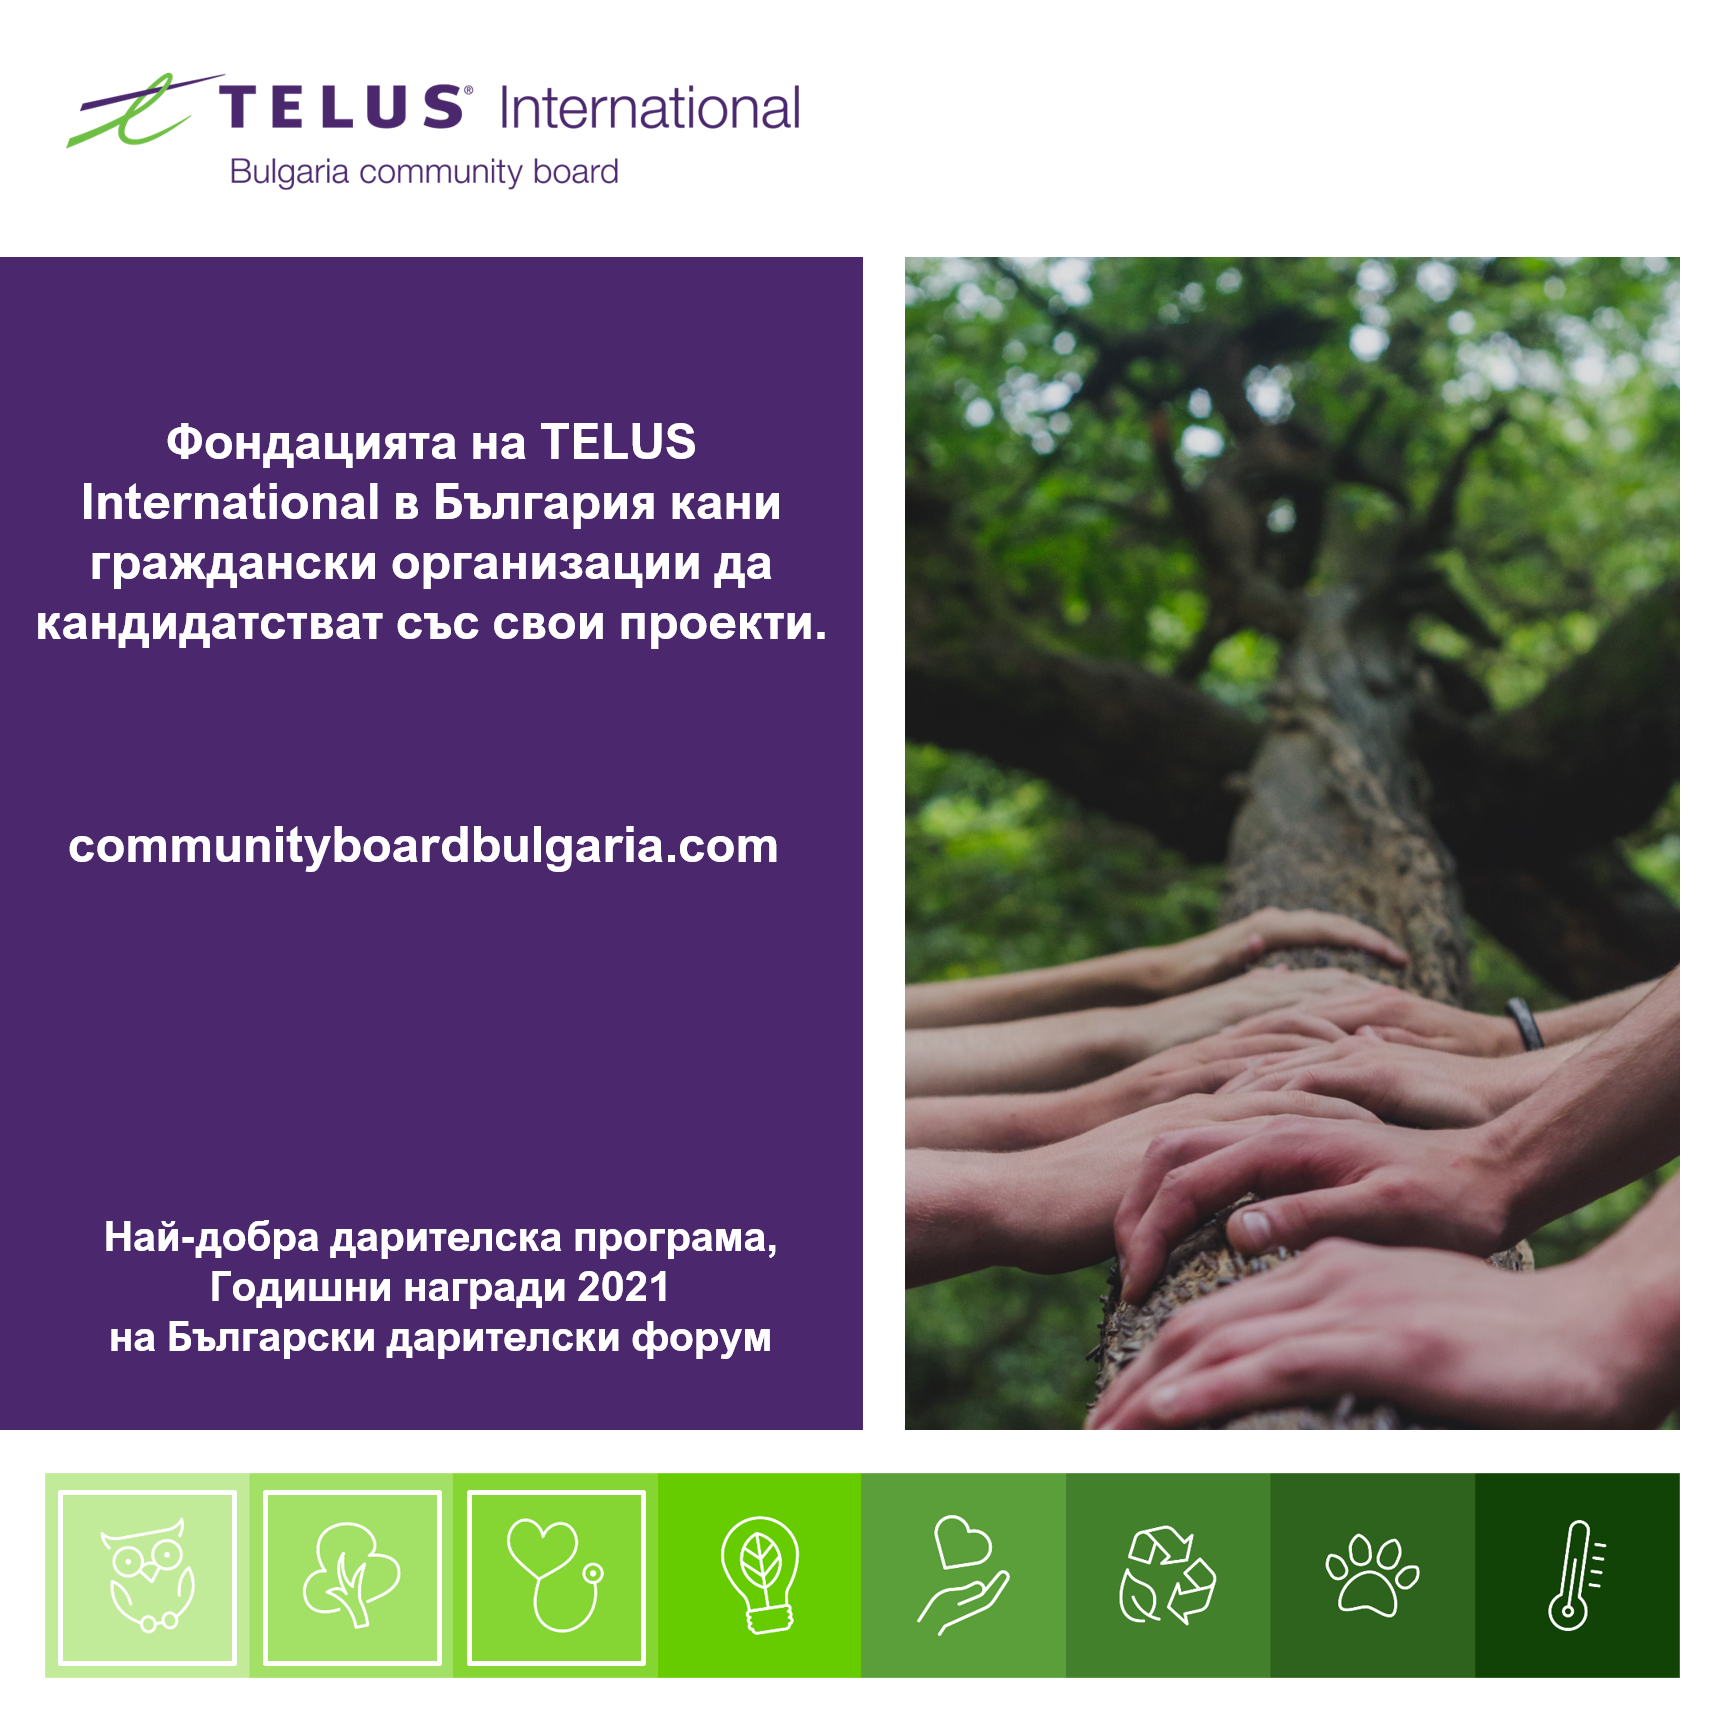 Фондацията на TELUS International в България кани граждански организации да кандидатстват със свои проекти за финансиране